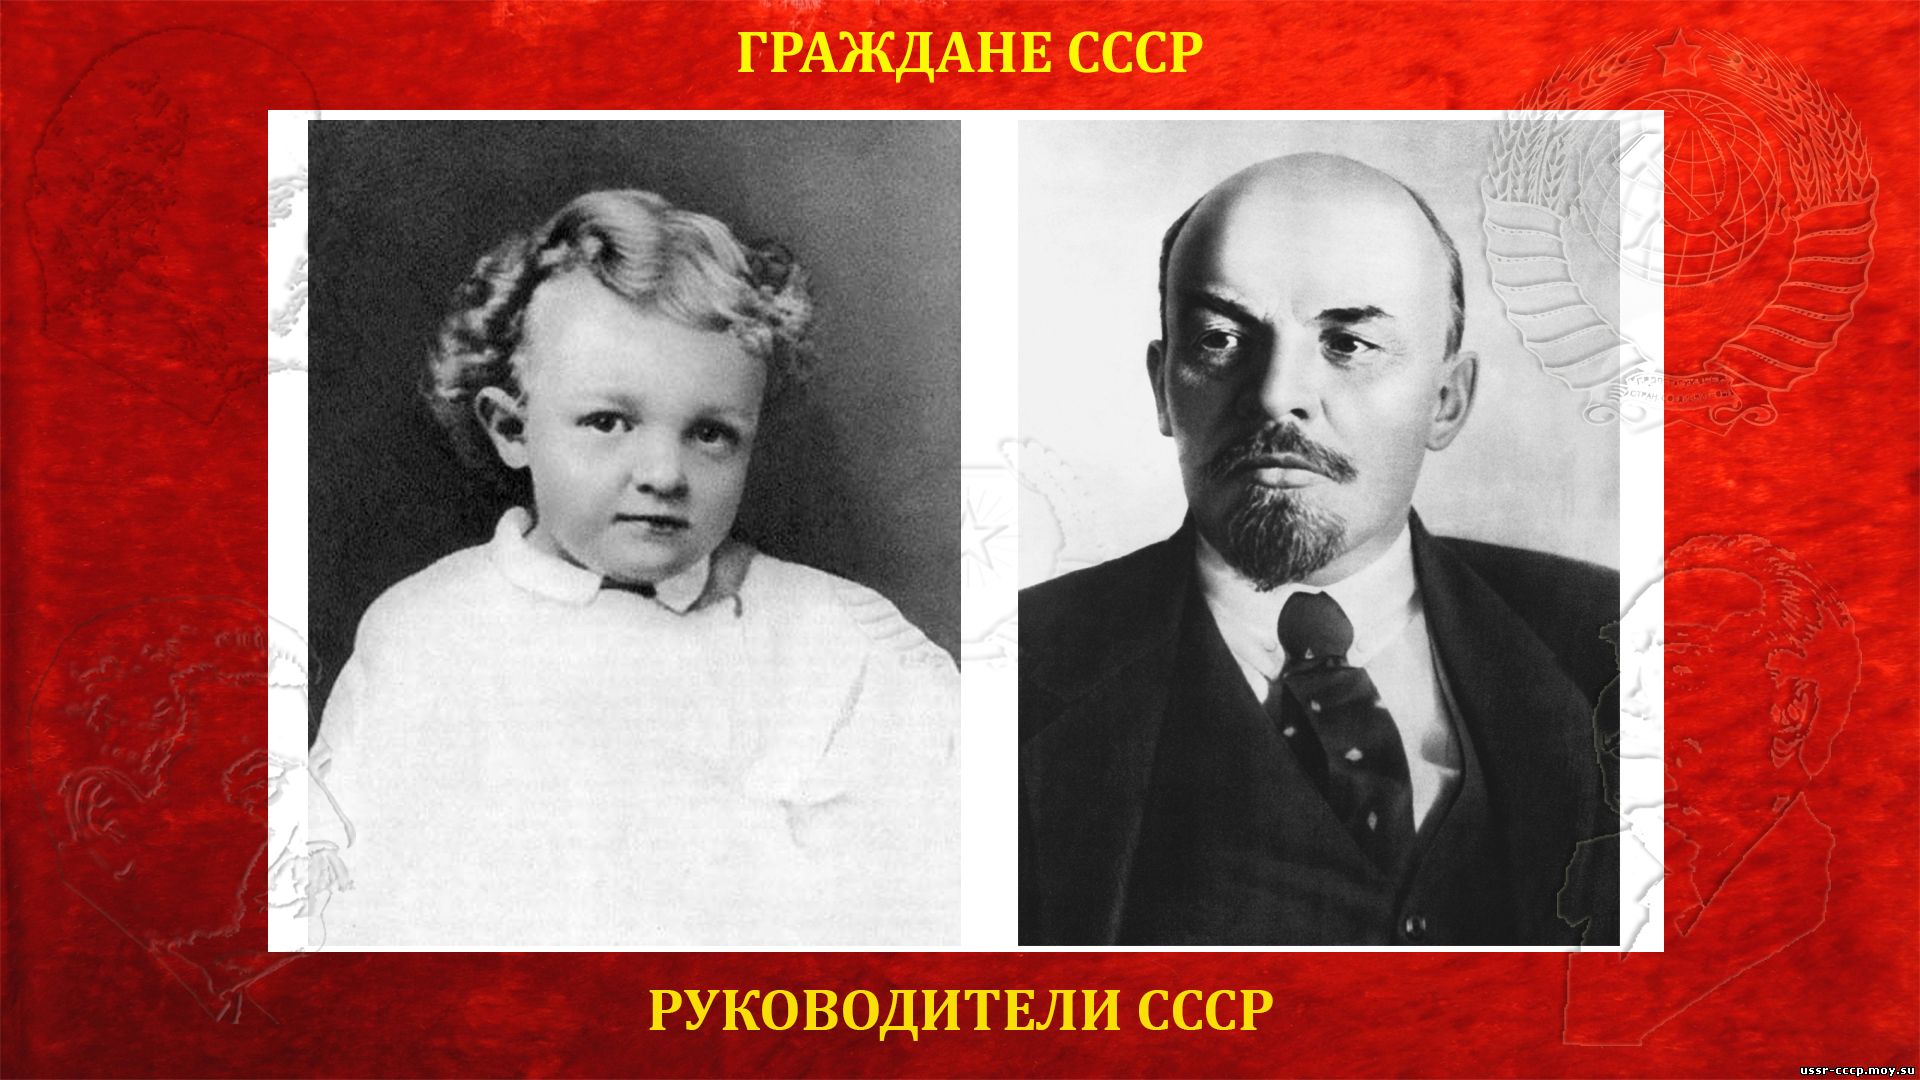 Ленин (Ульянов) Владимир Ильич — Вождь и руководитель СССР (биография)